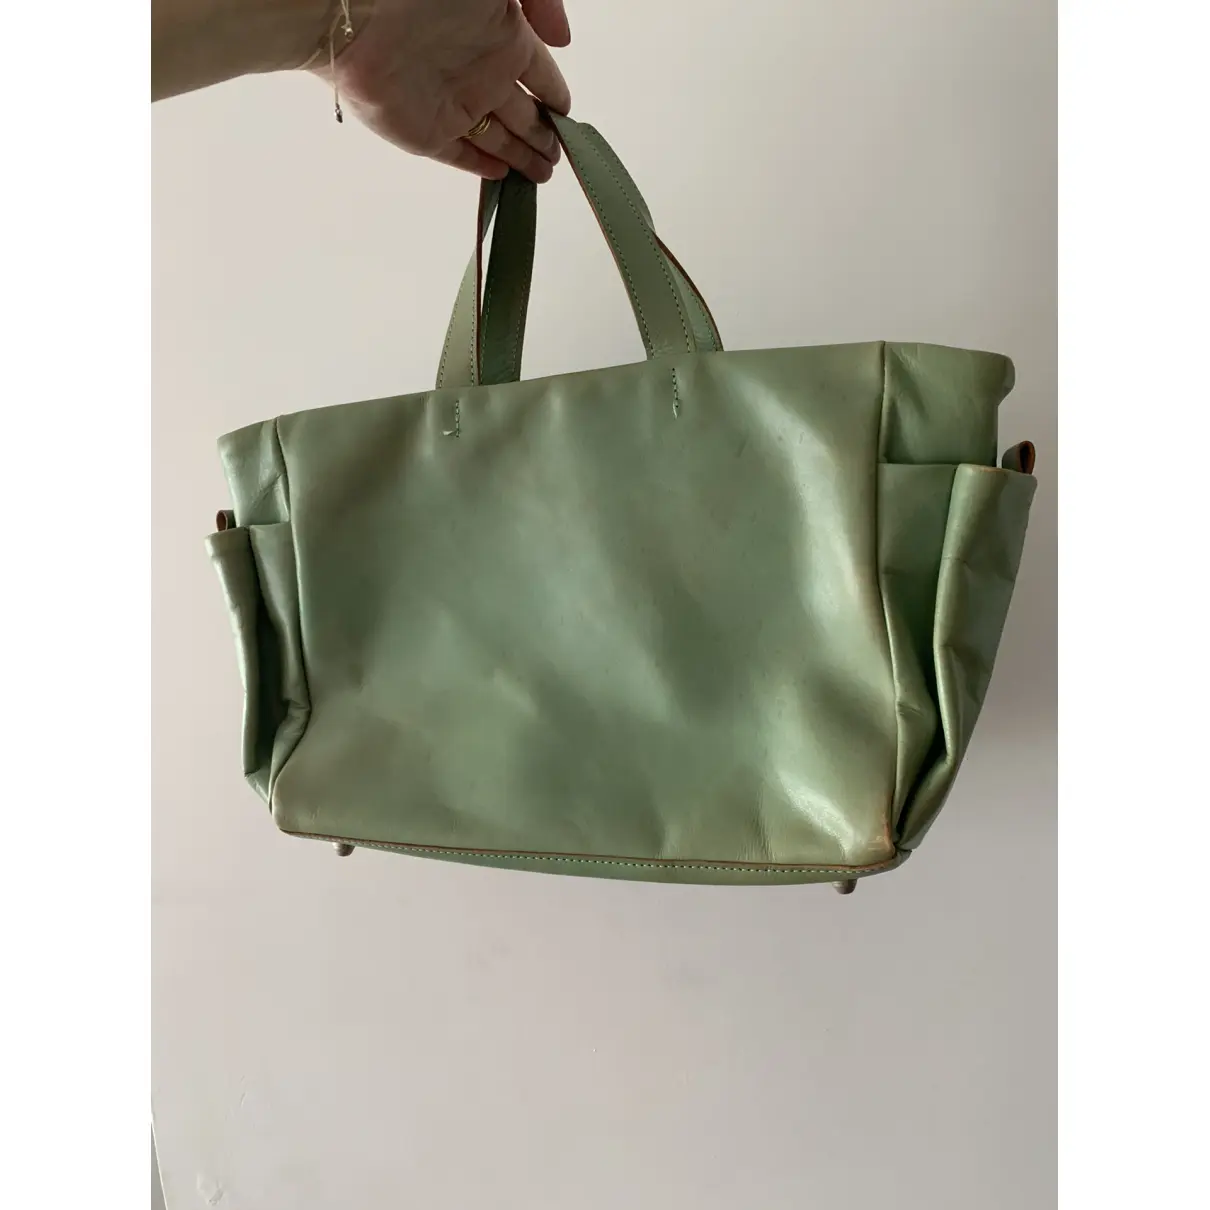 Buy Zucca Leather handbag online